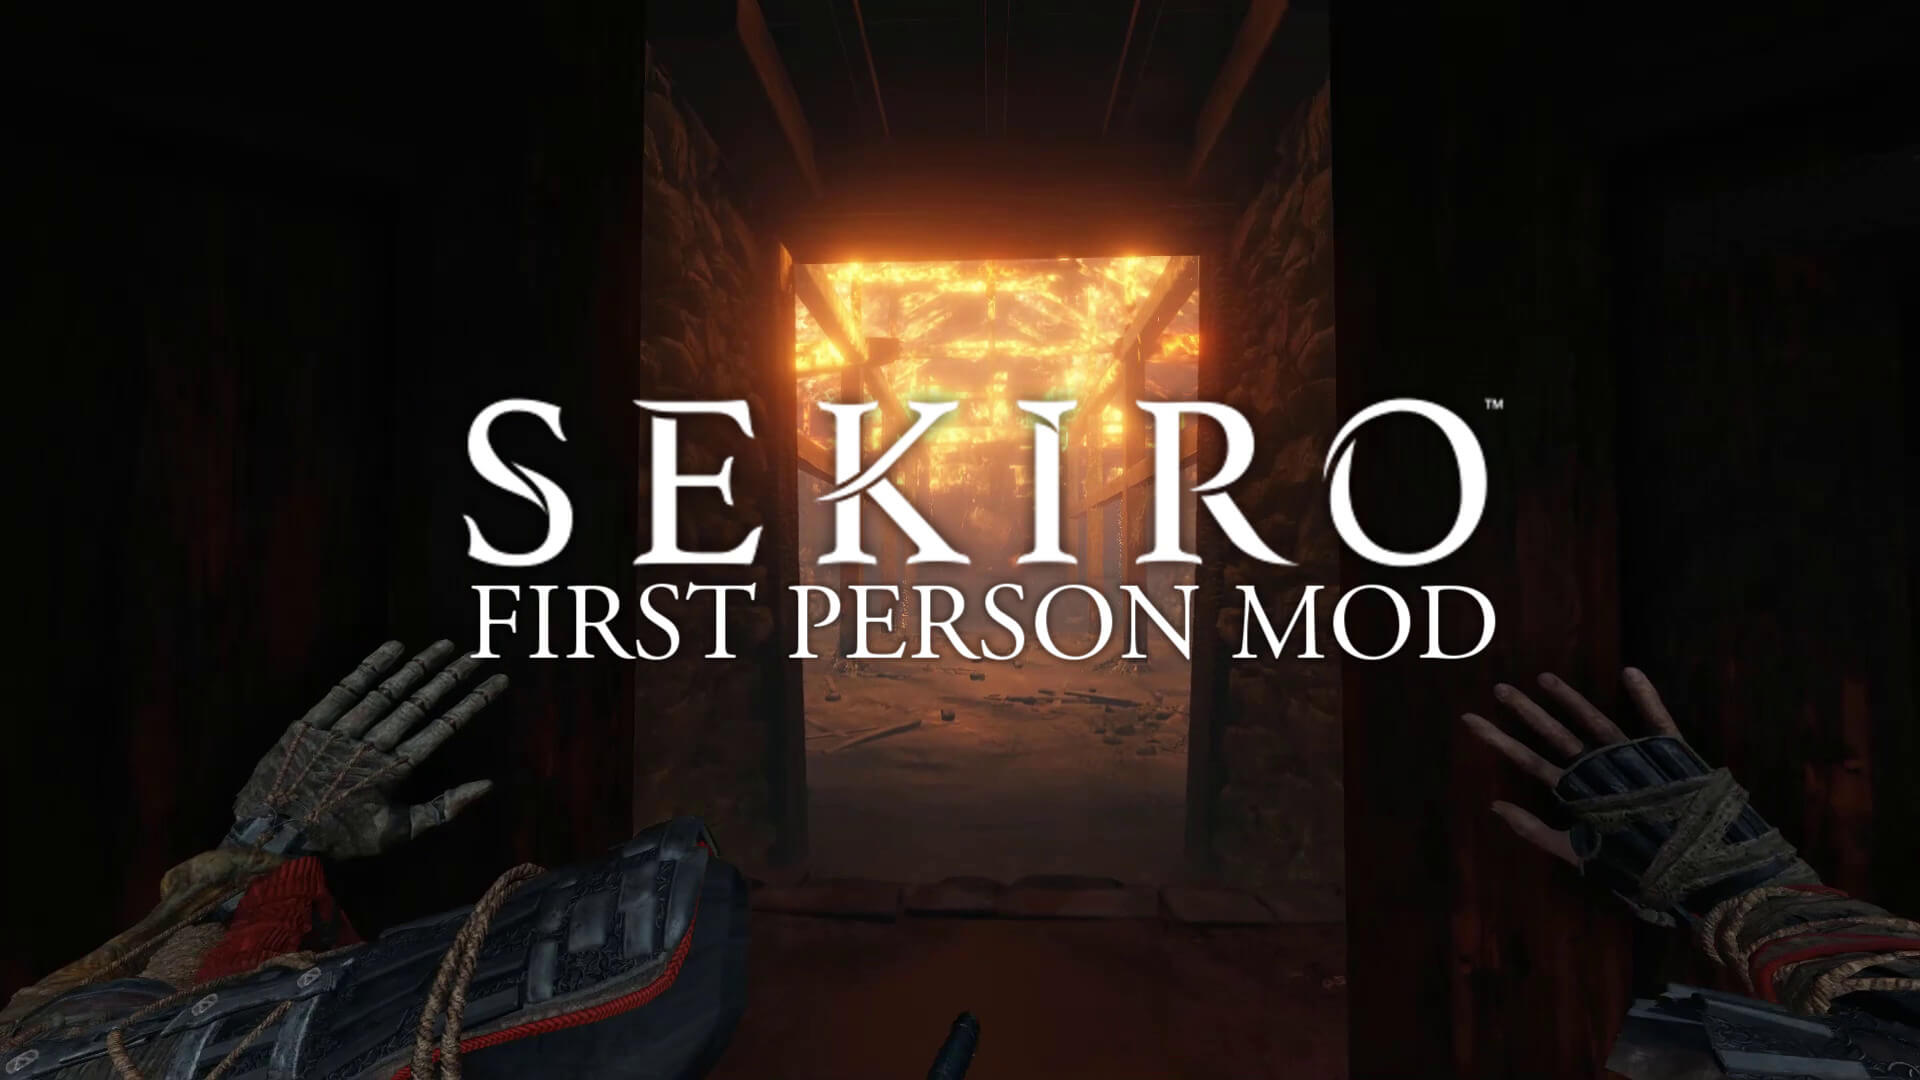 Anda sekarang dapat memainkan Sekiro: Shadows Die Twice dalam mode orang pertama berkat mod yang luar biasa ini